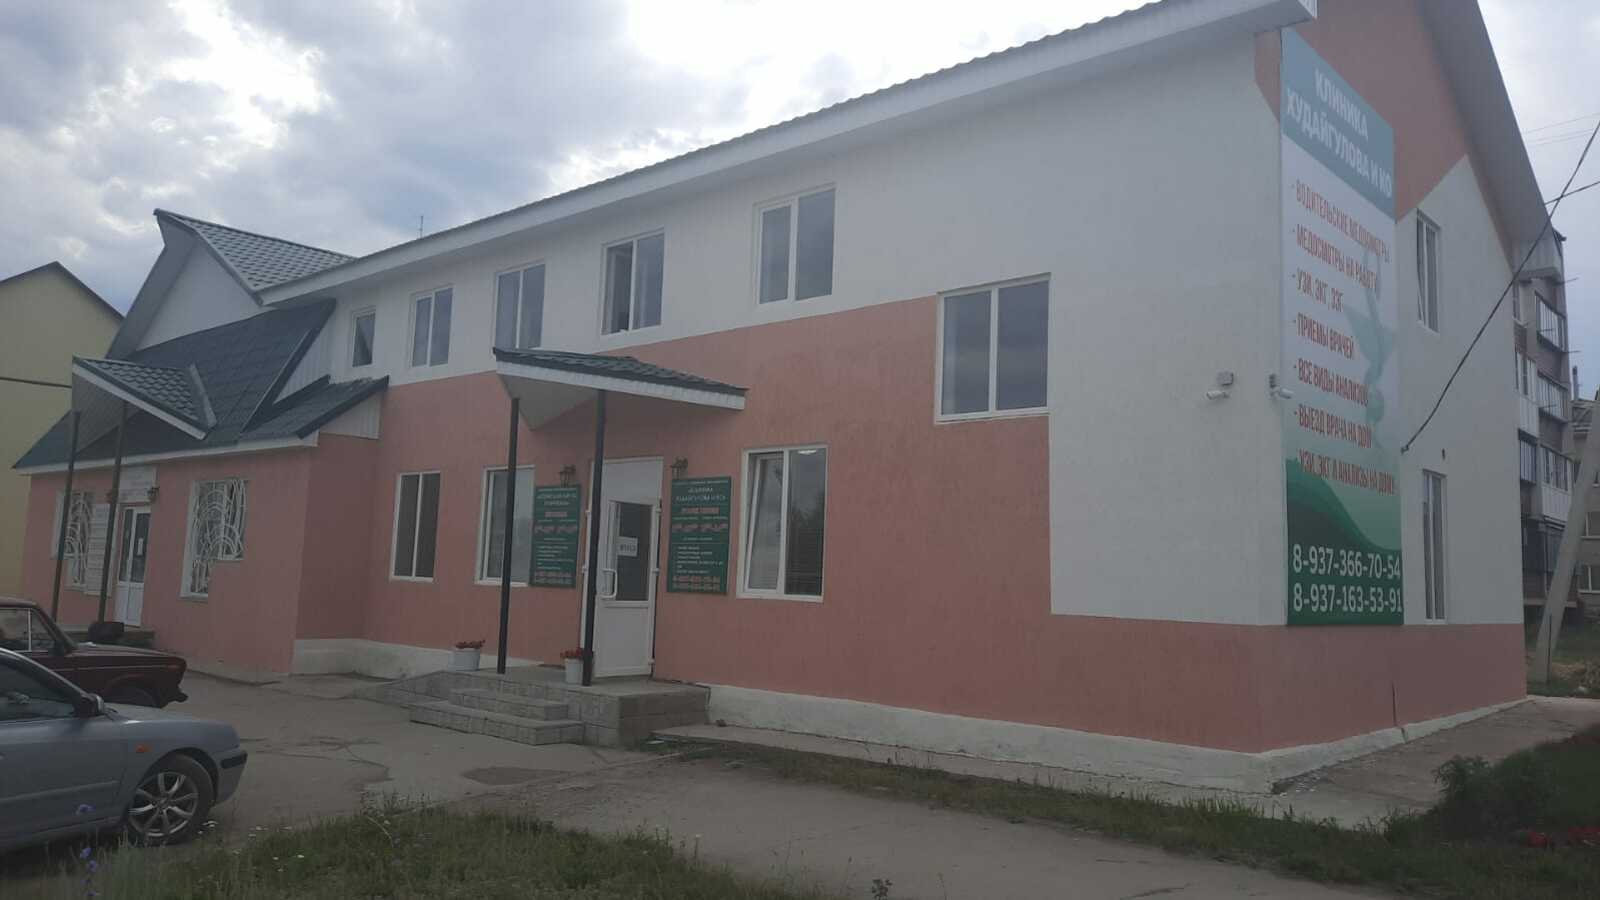 Клиника "Худайгулова и КО" - это комфортные условия для пациентов